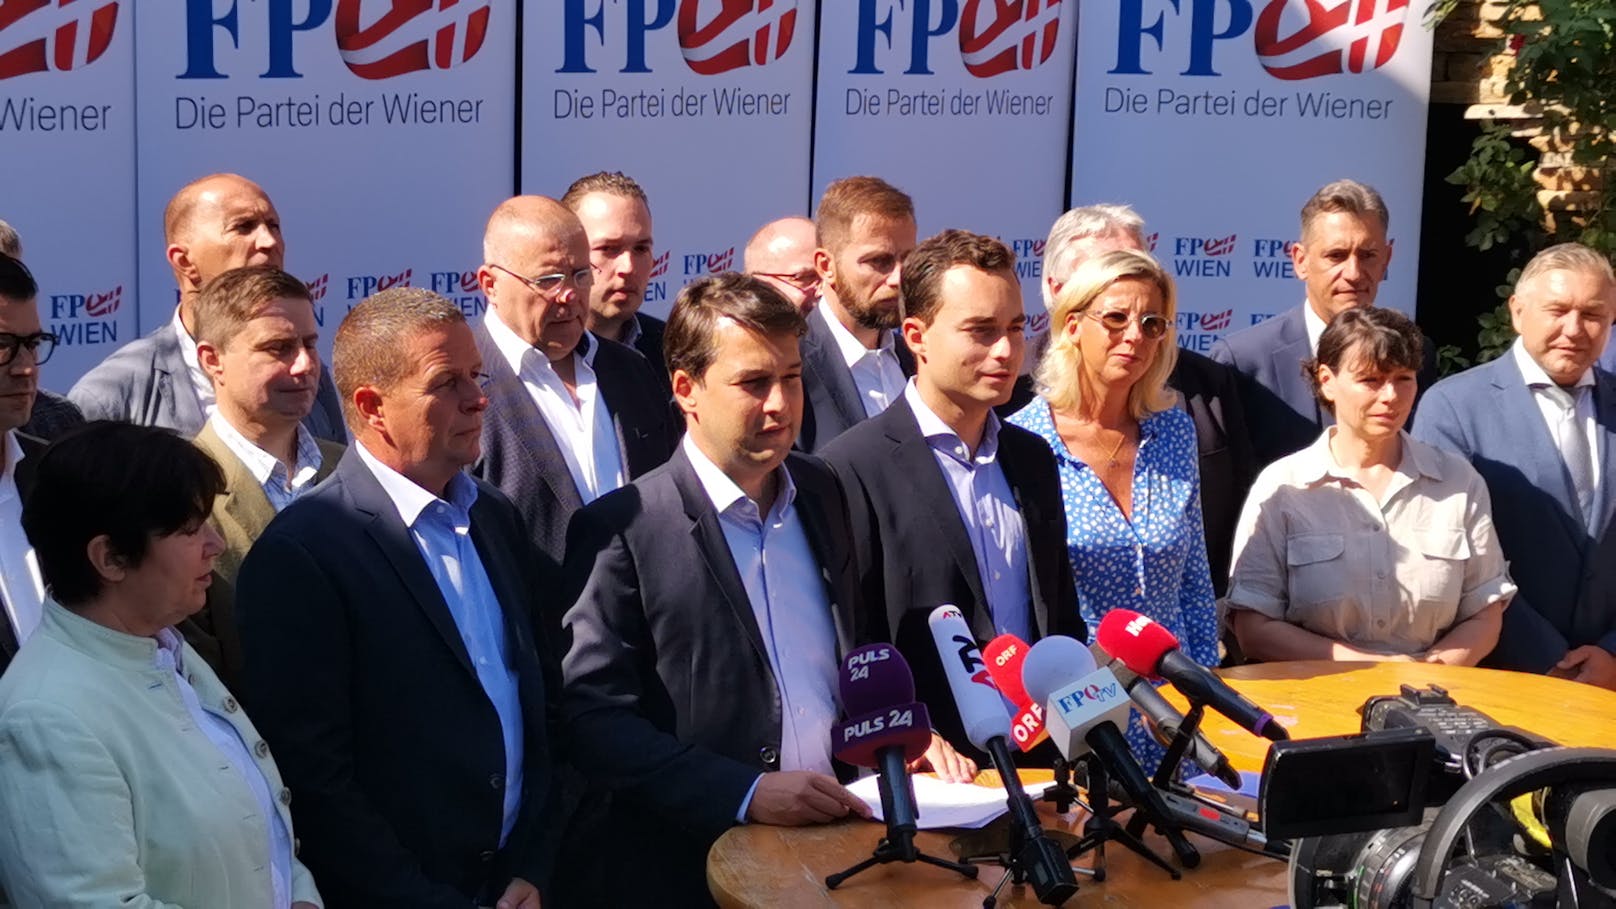 FP Wien stellt ihre Kandidaten für Wien-Wahl vor (12. August 2020)